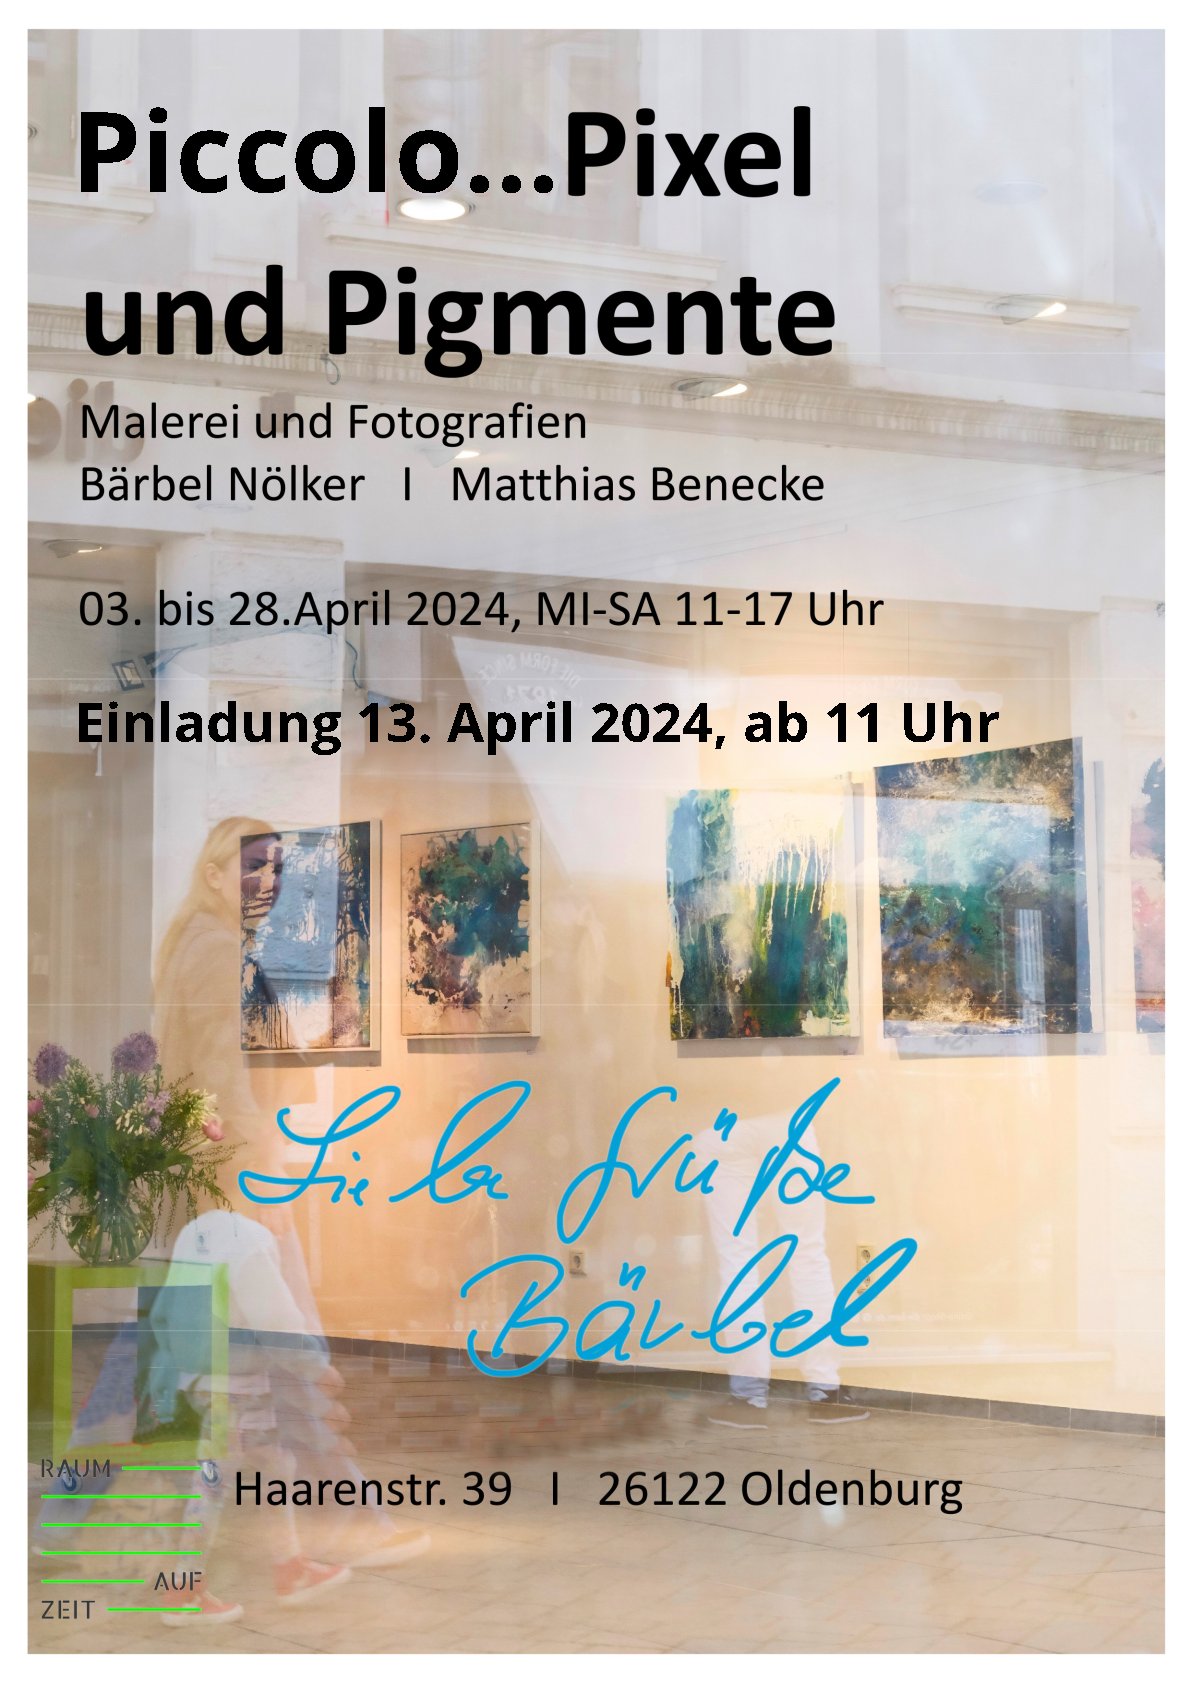 Flyer "pixel und Pigmente" Bärbel Nölker und Matthias Benecke